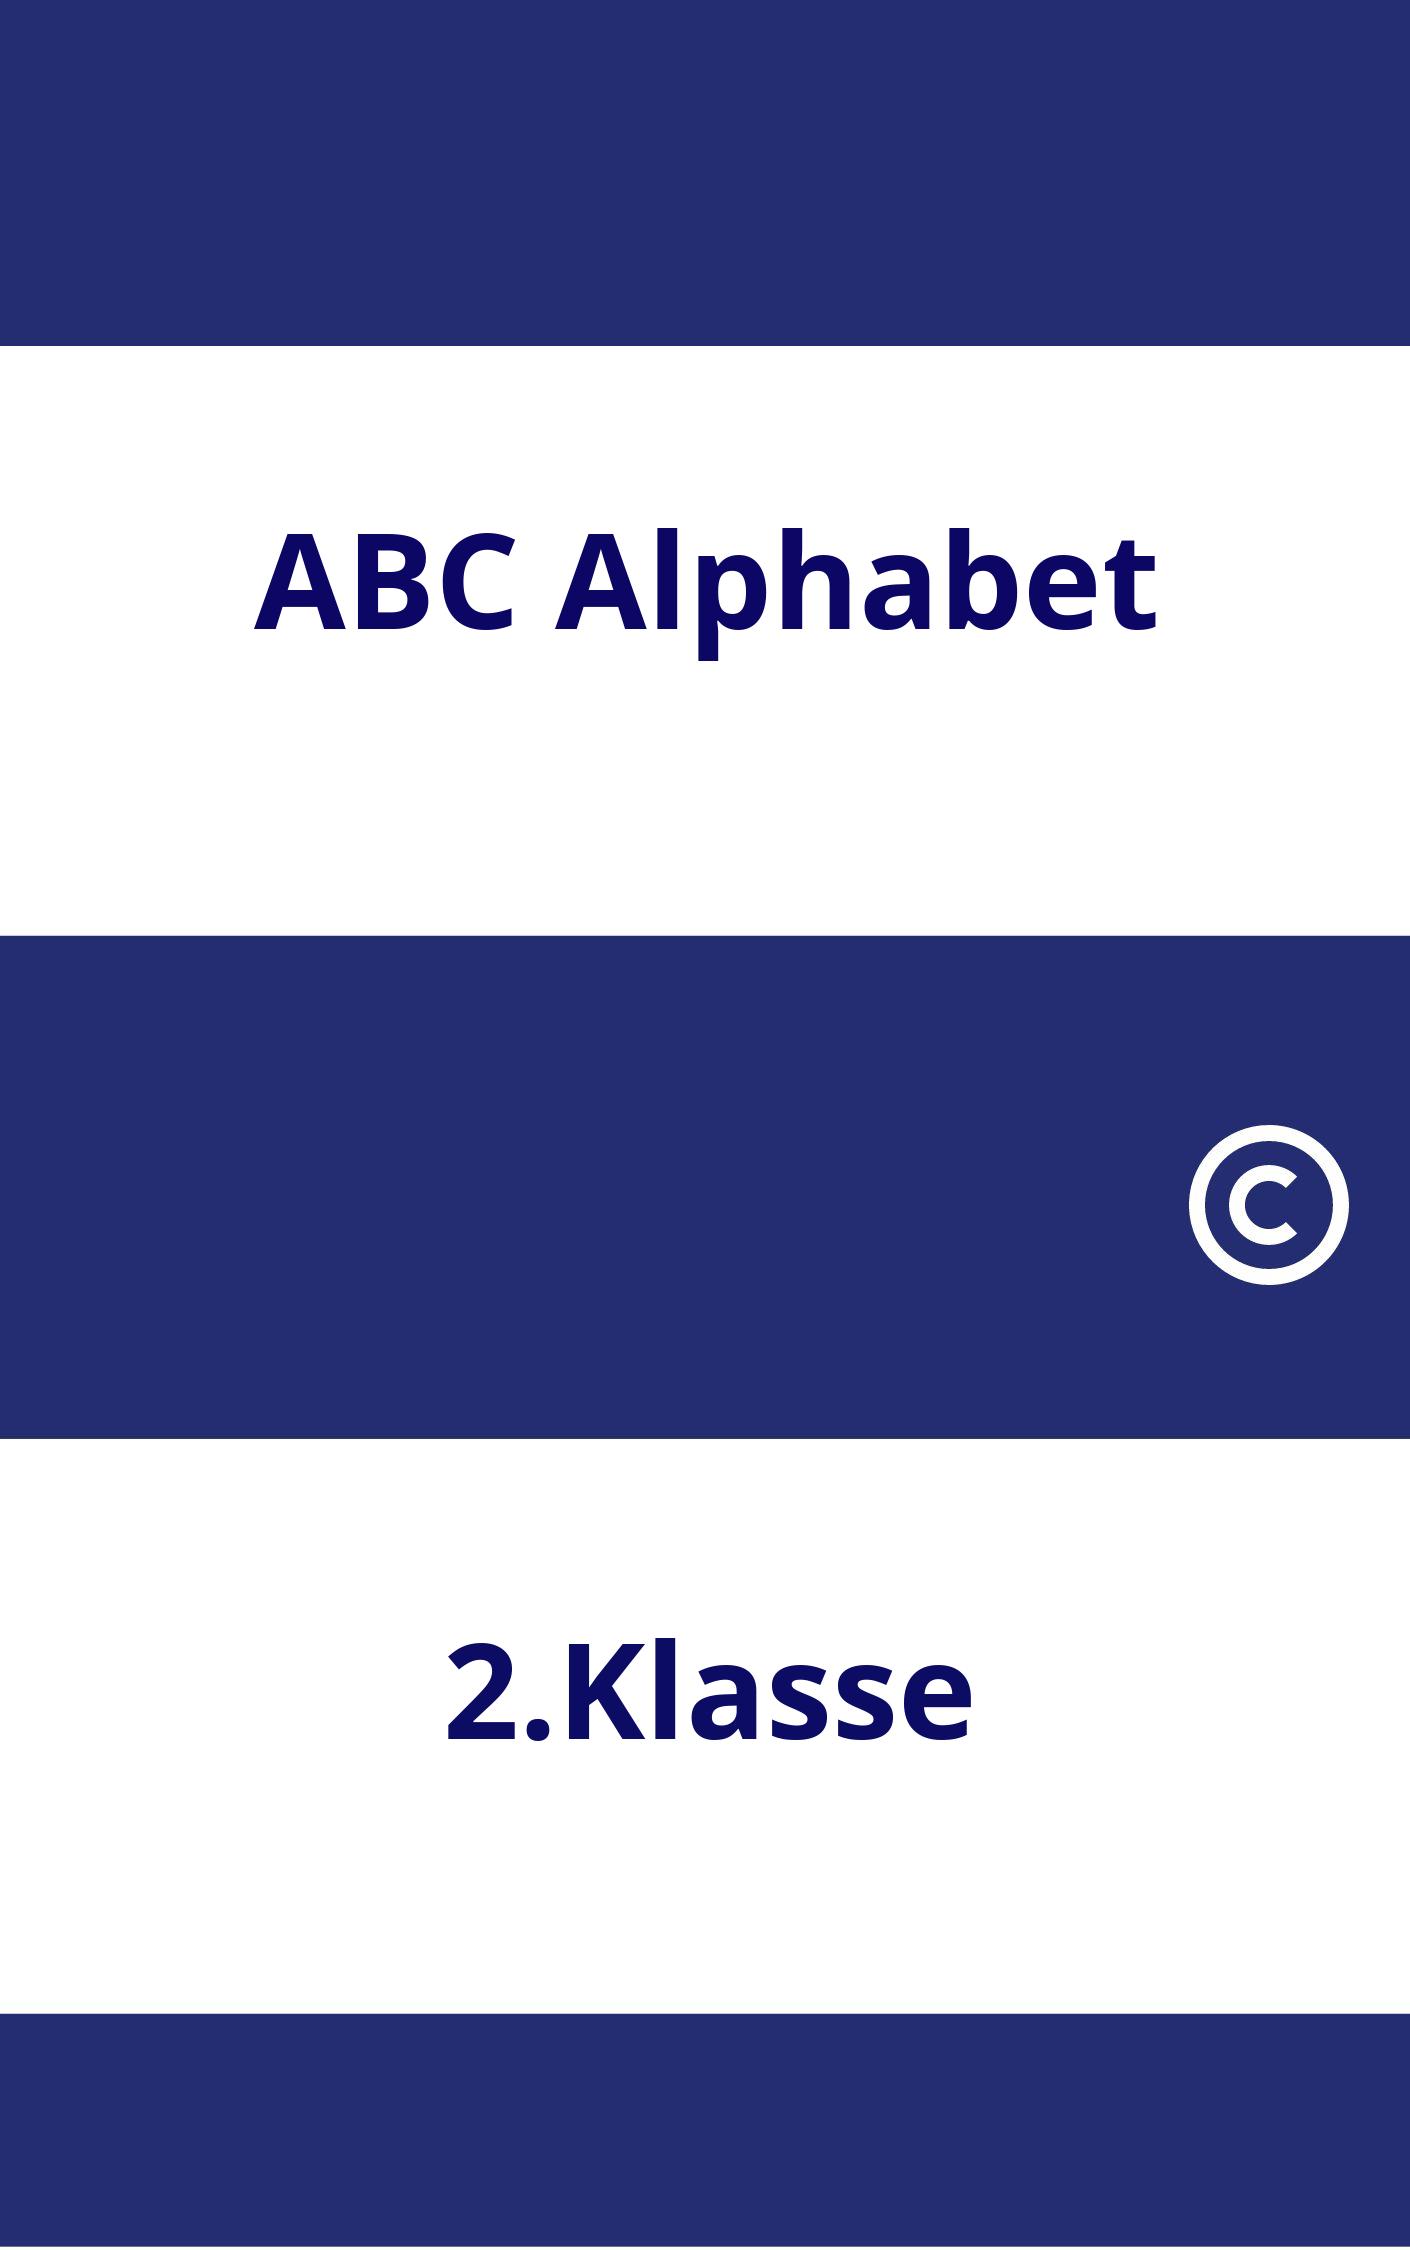 ABC Alphabet 2.Klasse Arbeitsblätter PDF